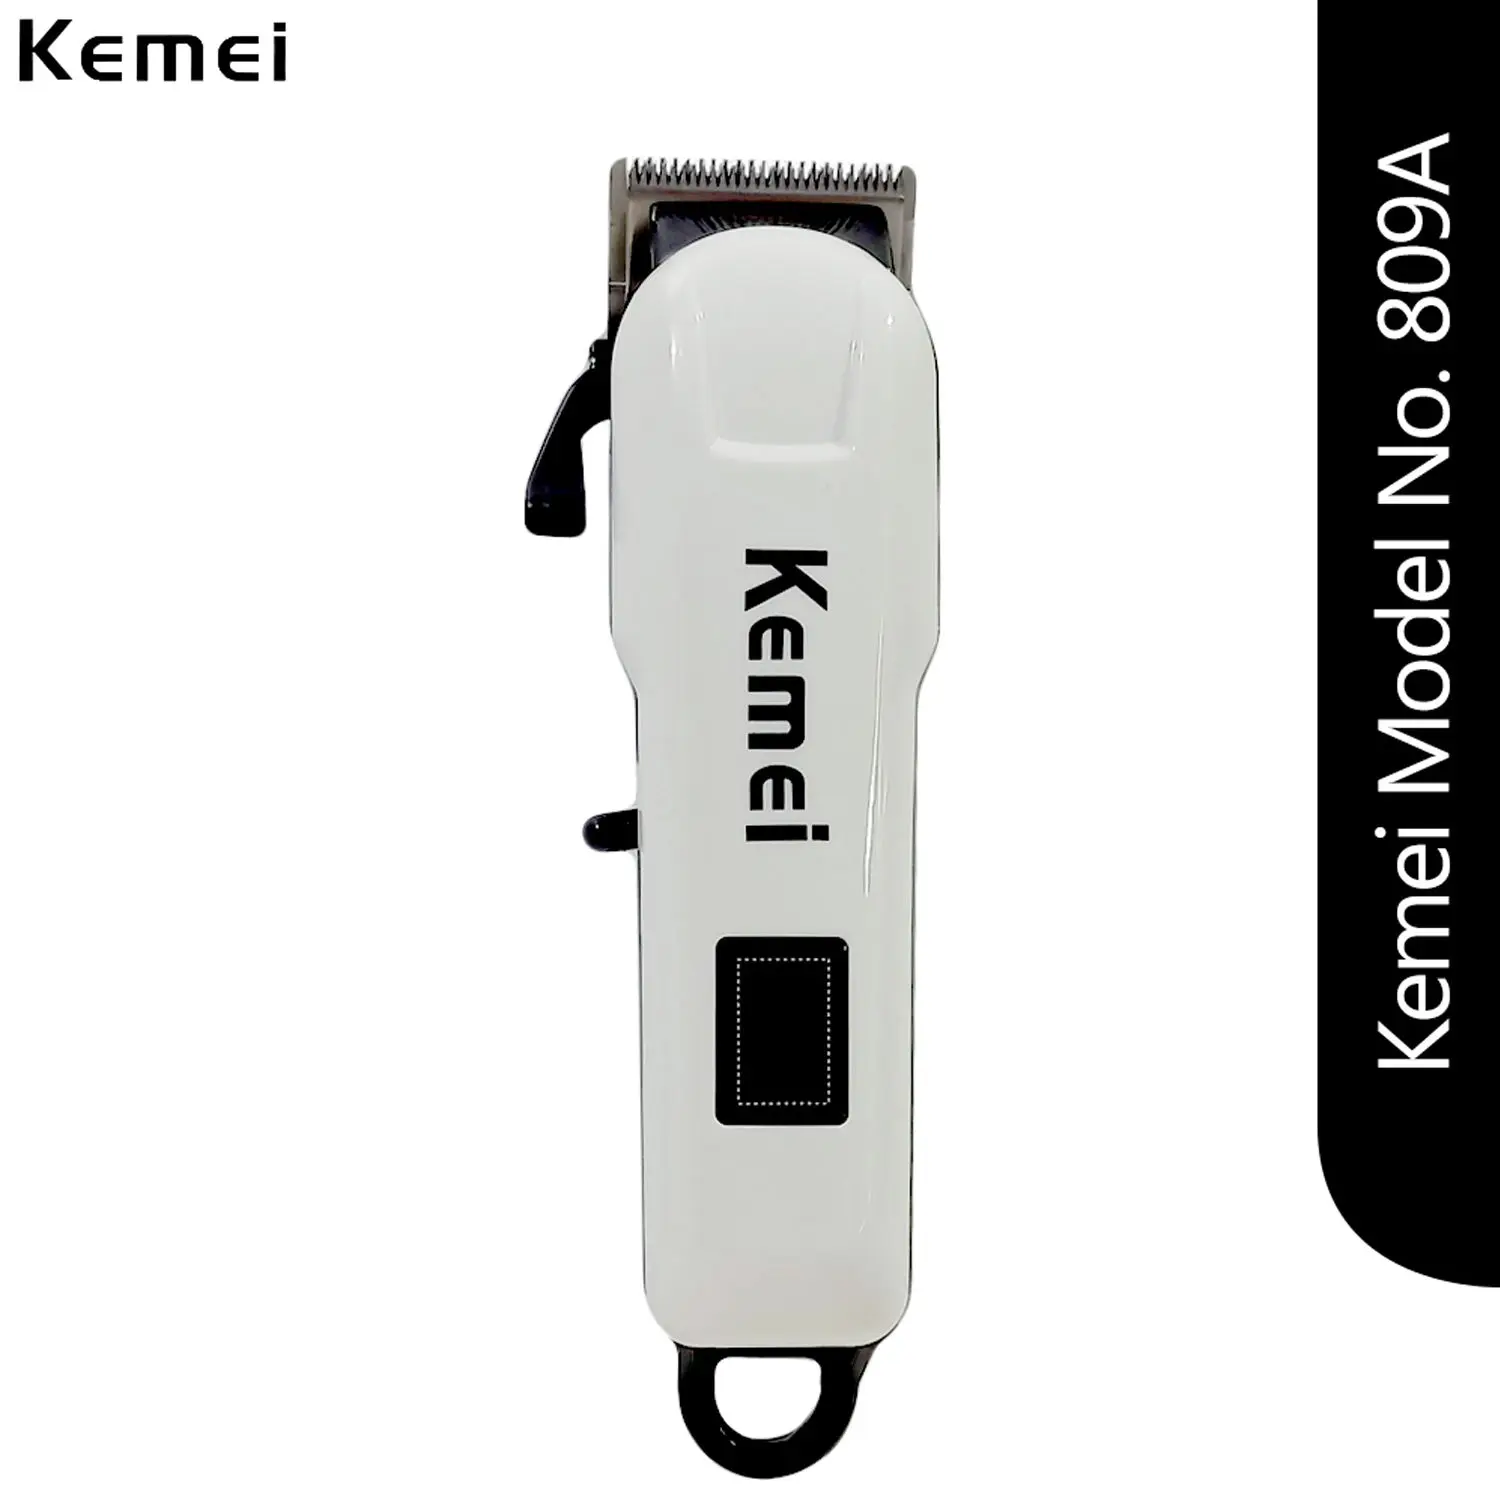 Kemei KM-809A Rechagreable Trimmer